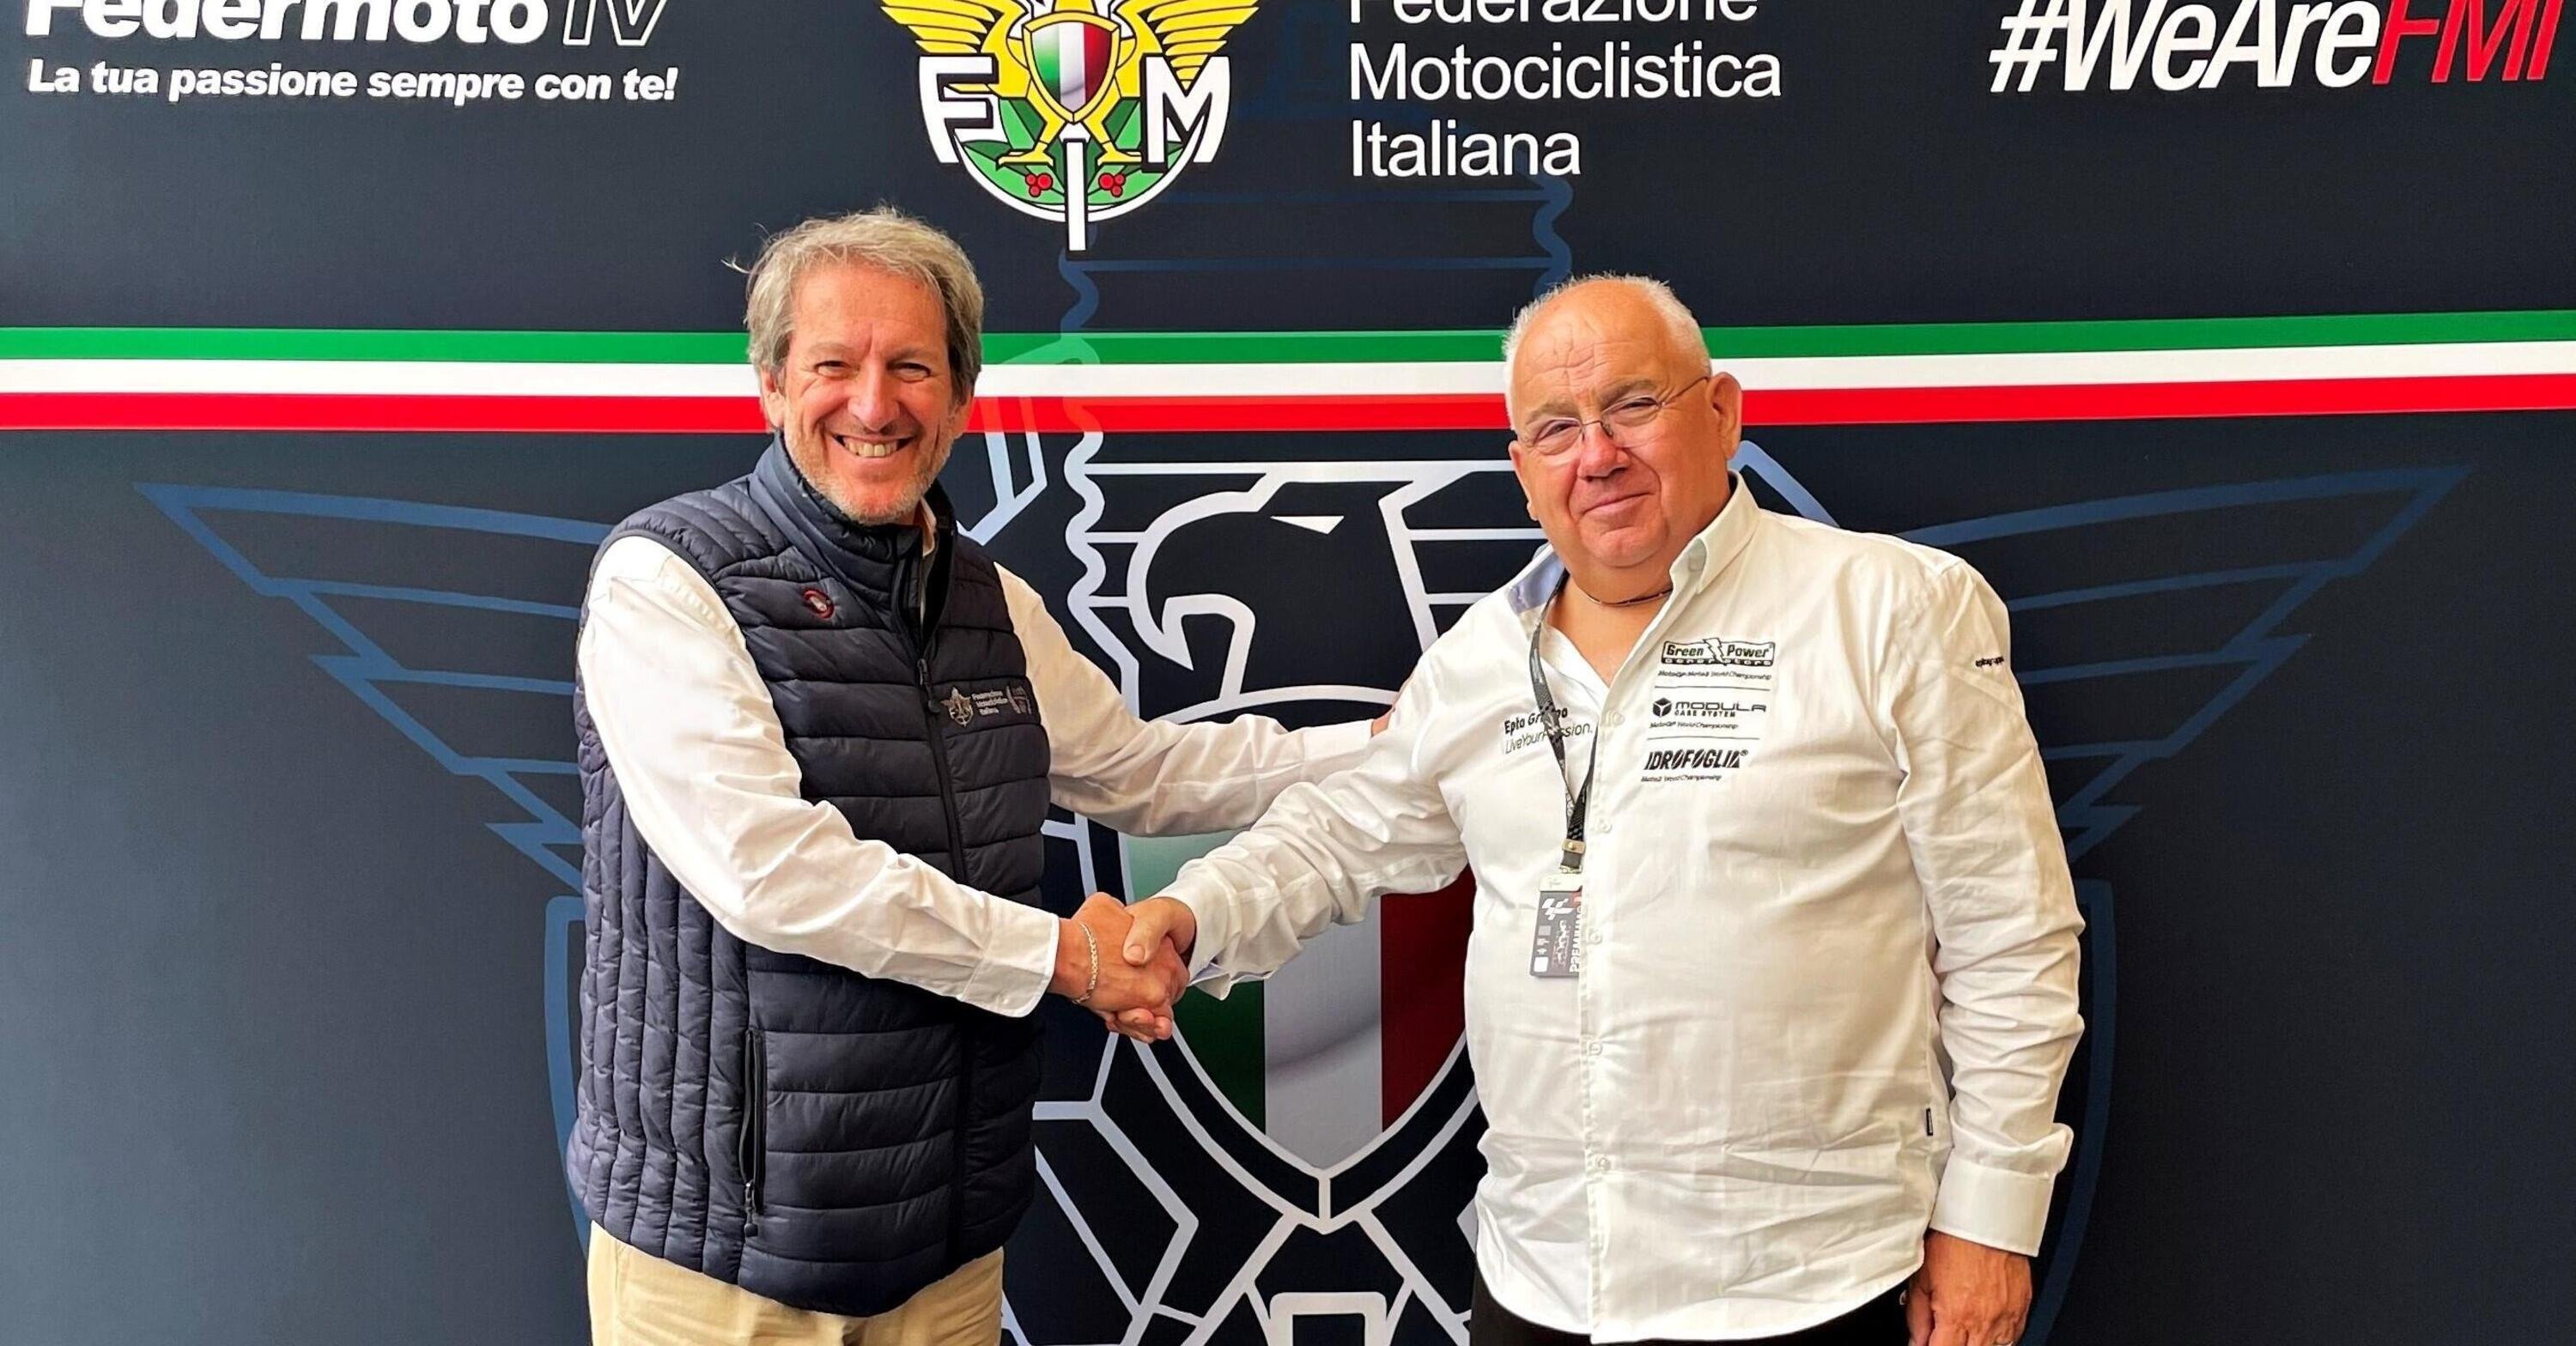 Green Power insieme alla Federazione Motociclistica Italiana